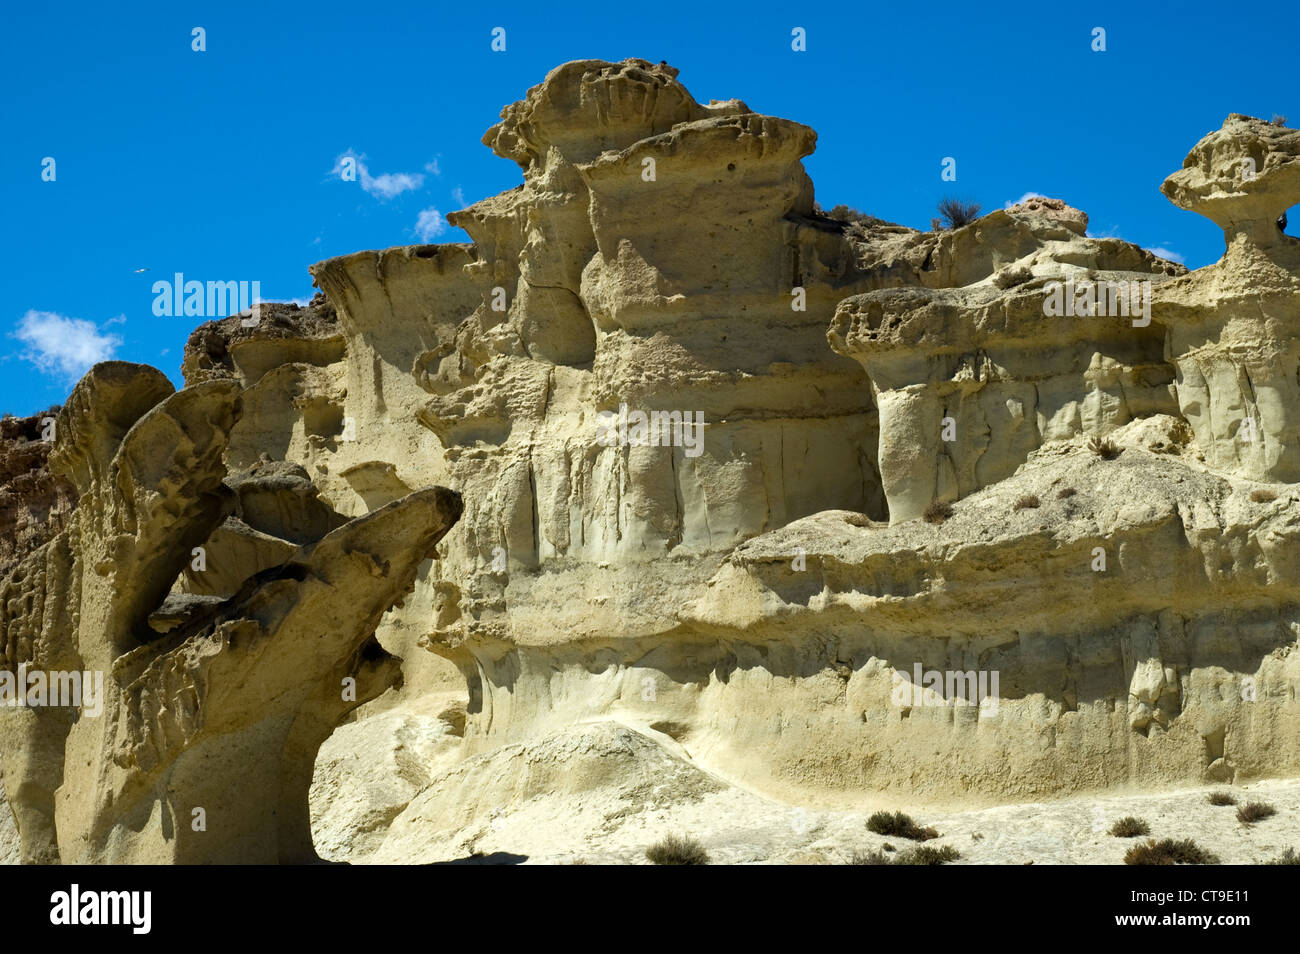 Naturstein Skulpturen Erosionen, Sandstein Denkmäler durch Wasser und Wind geformt. Bolnuevo, Provence von Murcia, Spanien Stockfoto